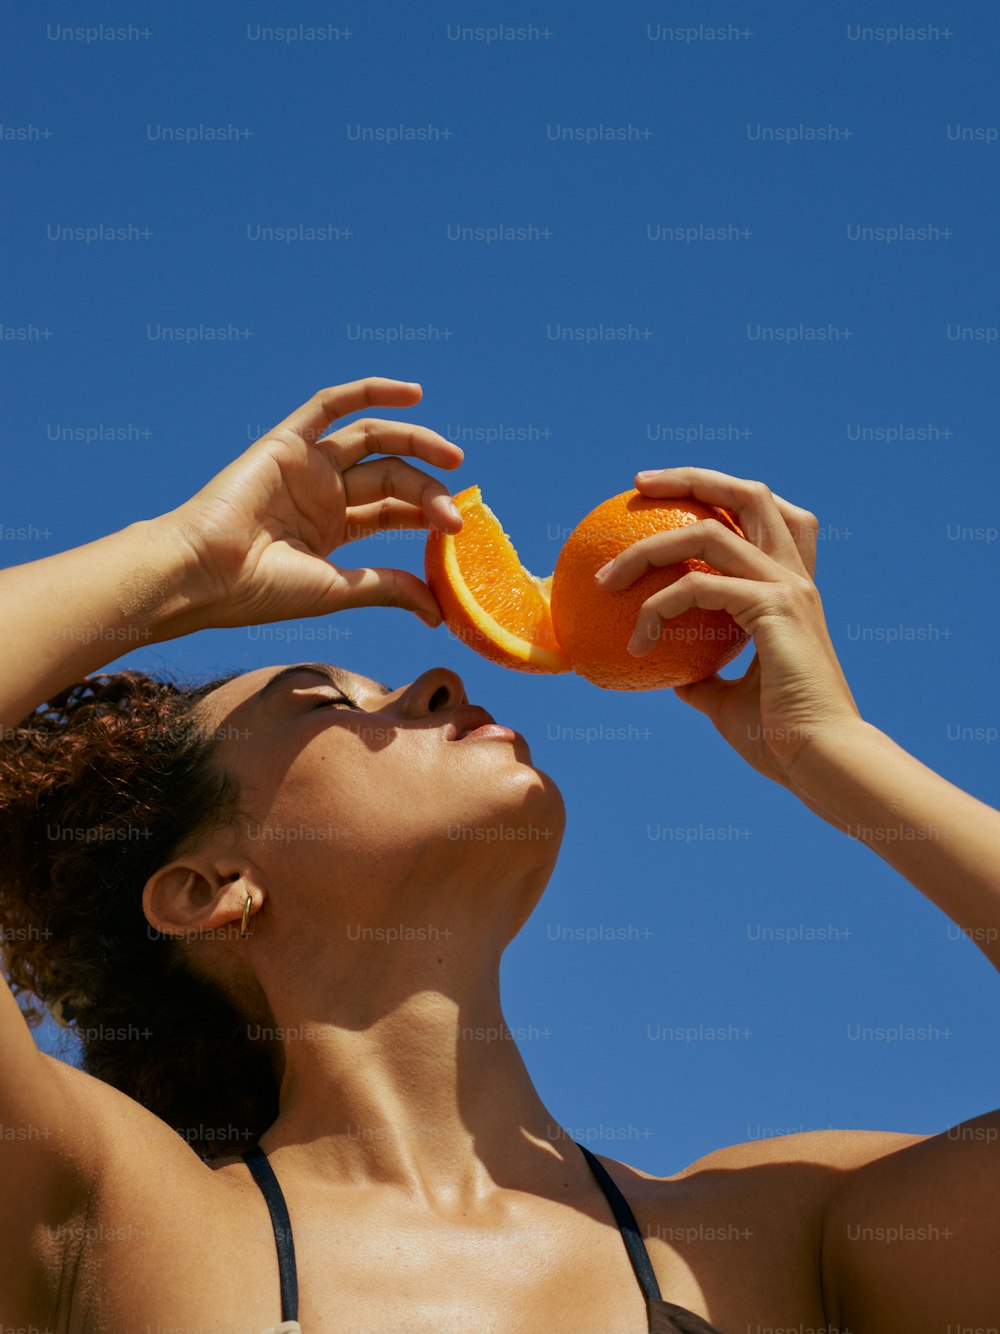 a woman in a bikini is holding an orange